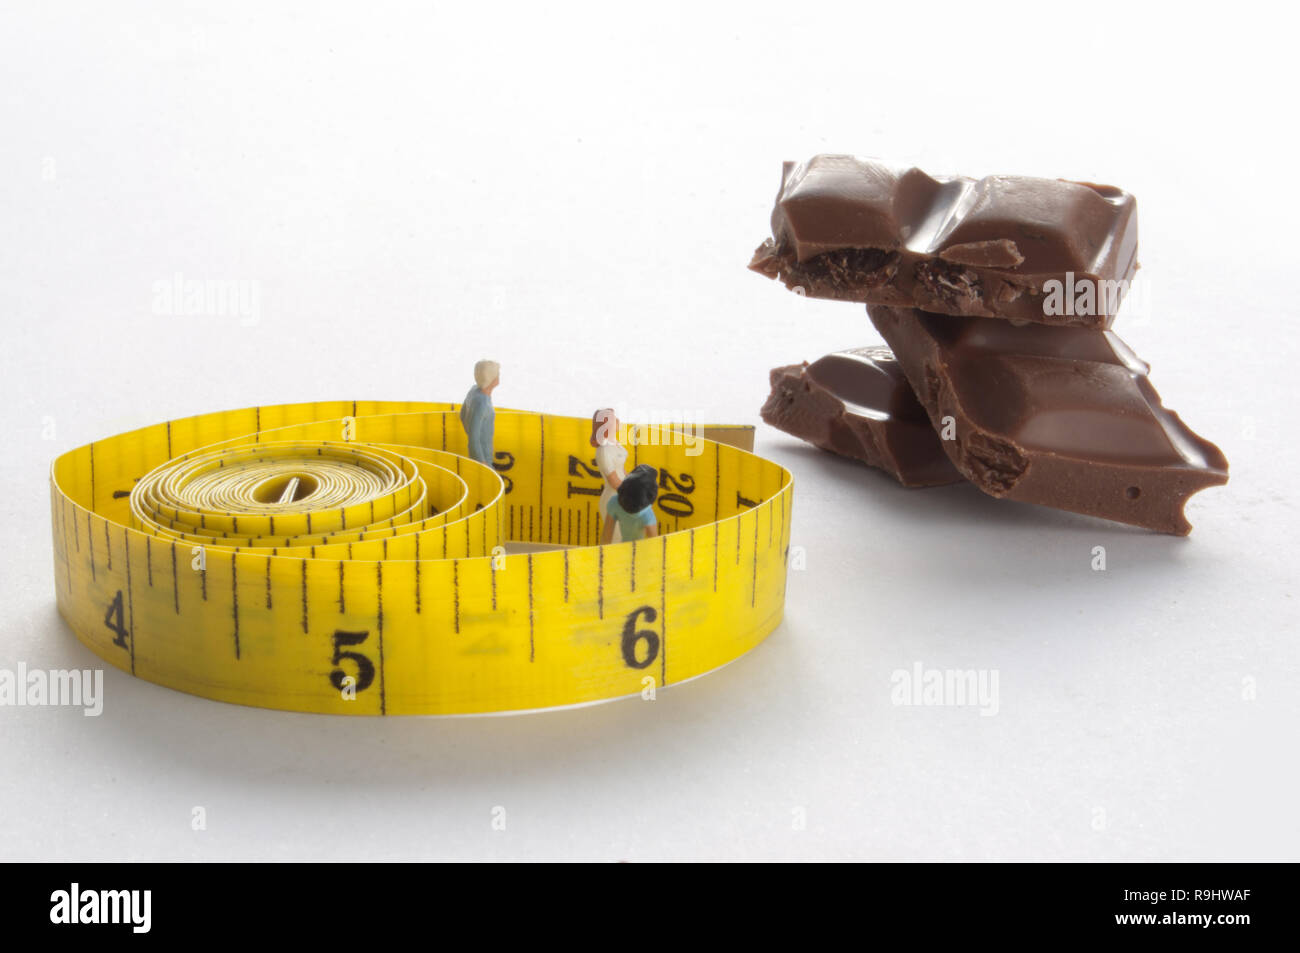 Miniatur Personen innerhalb ein Maßband mit Blick auf einen Stapel von Schokolade Blöcke Stockfoto